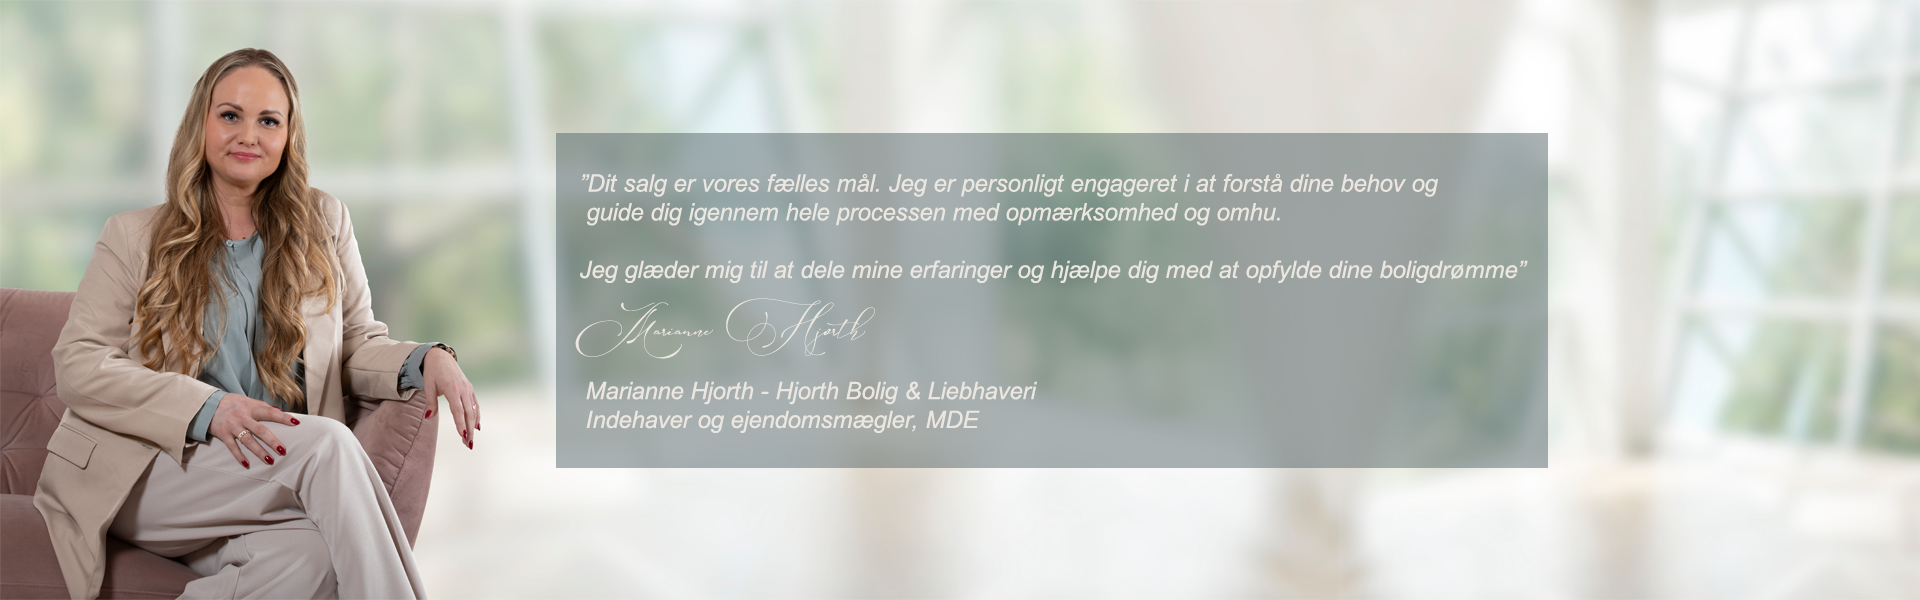 Oplev en personlig og professionel bolighandel hos Hjorth Bolig & Liebhaveri